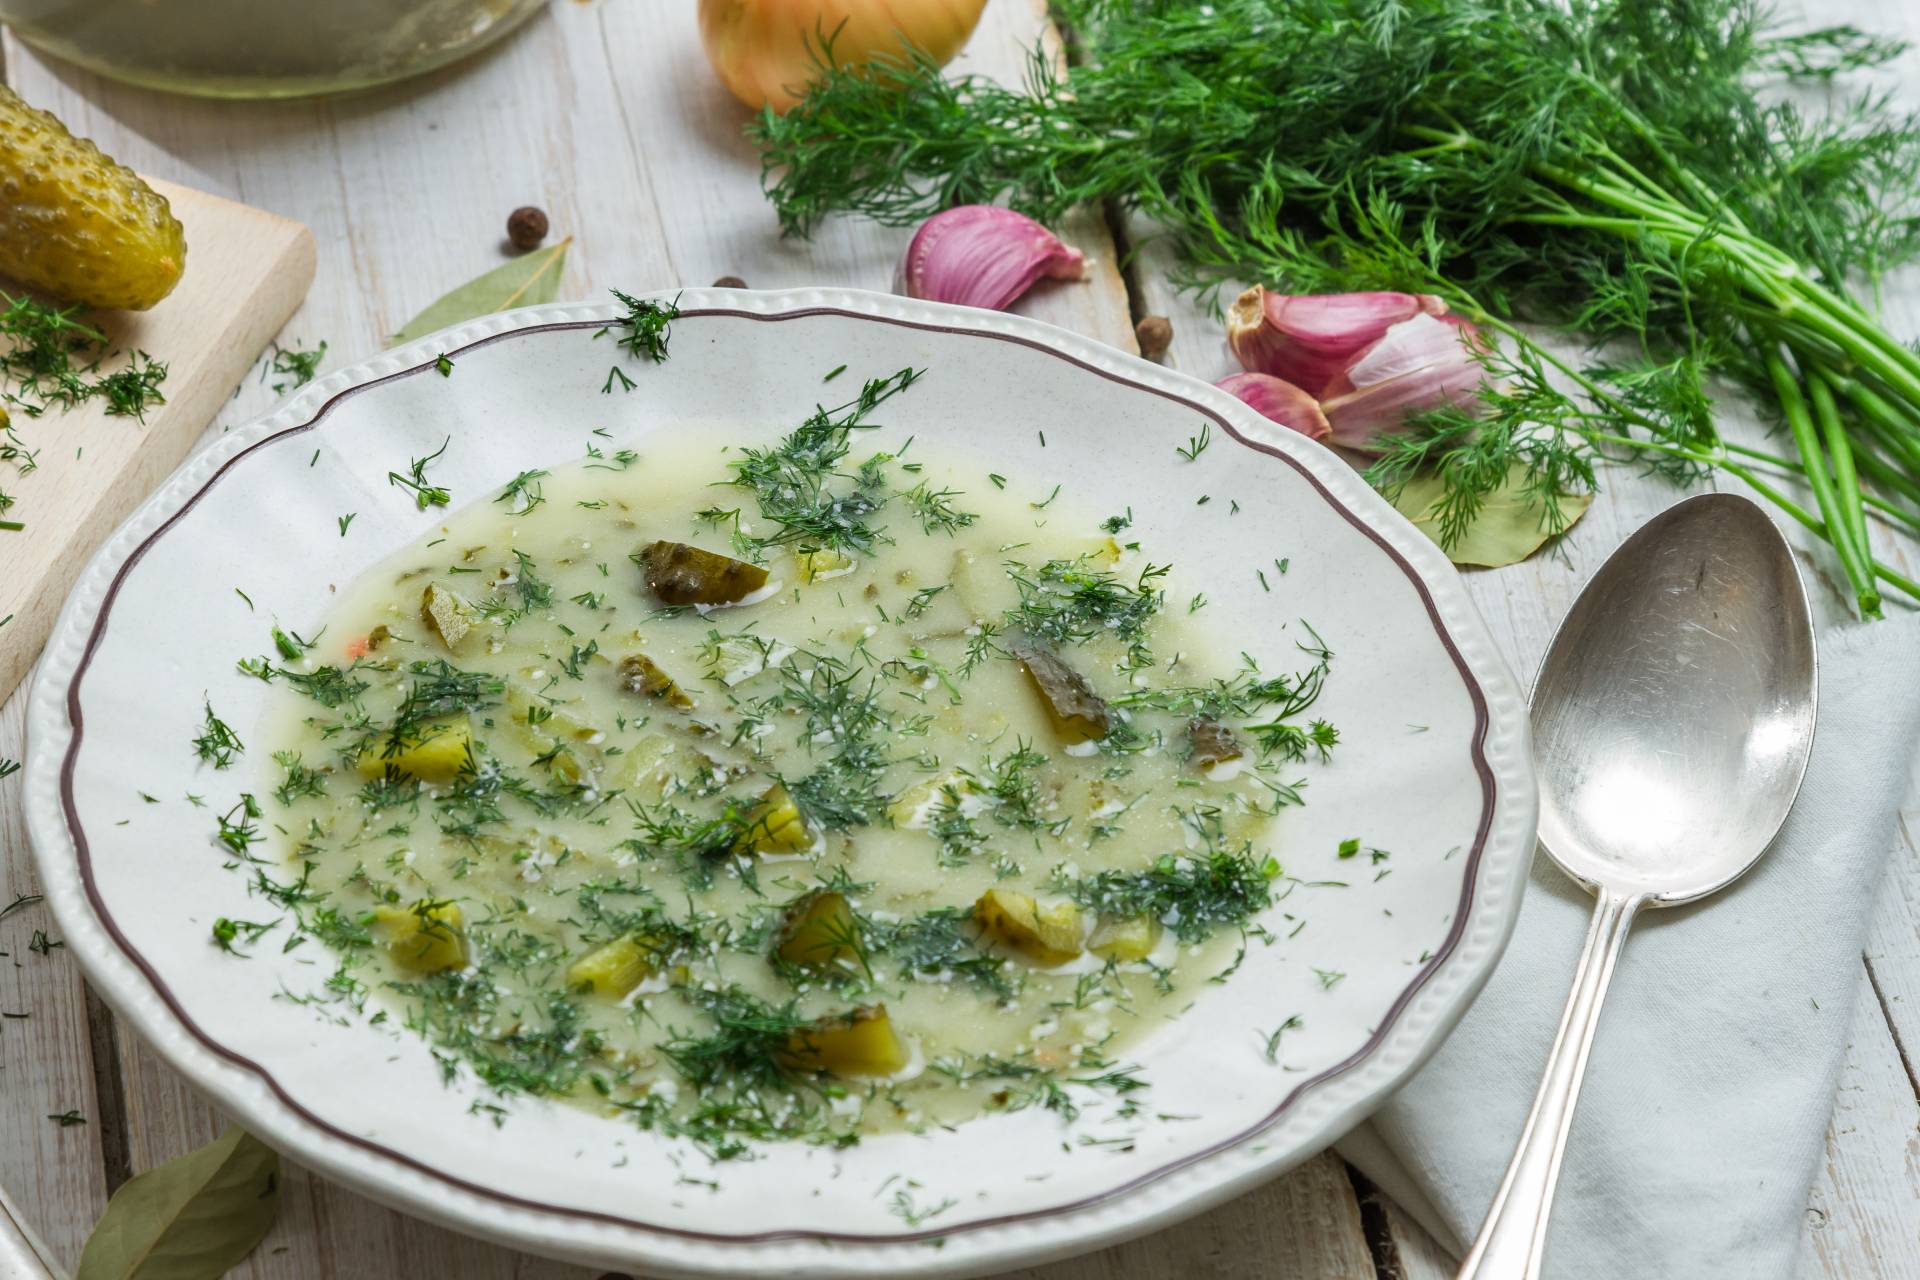 Jakie przyprawy do zupy ogórkowej? To nie sól jest najważniejsza. Będą błagać cię o przepis